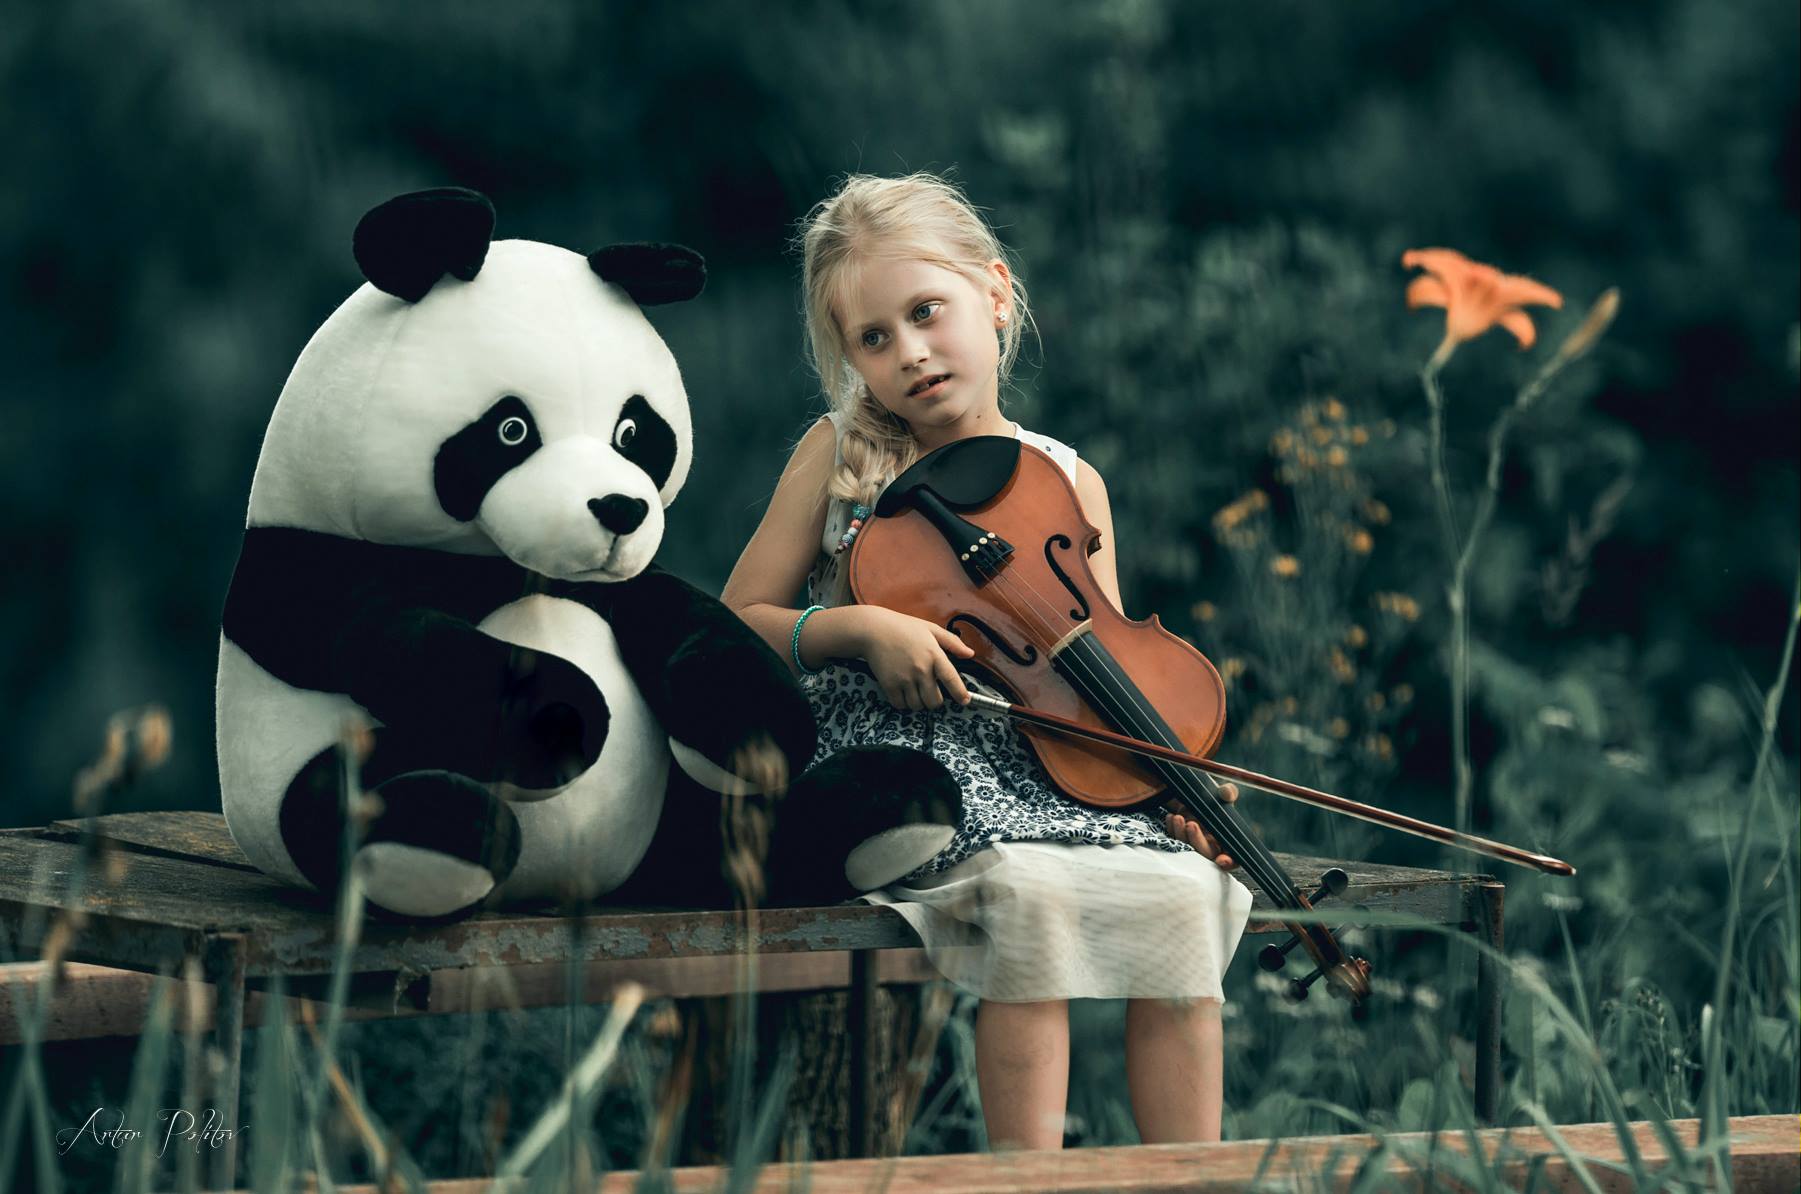 Фото Девочка со скрипкой сидит рядом с игрушечной пандой, фотограф Artur Politov